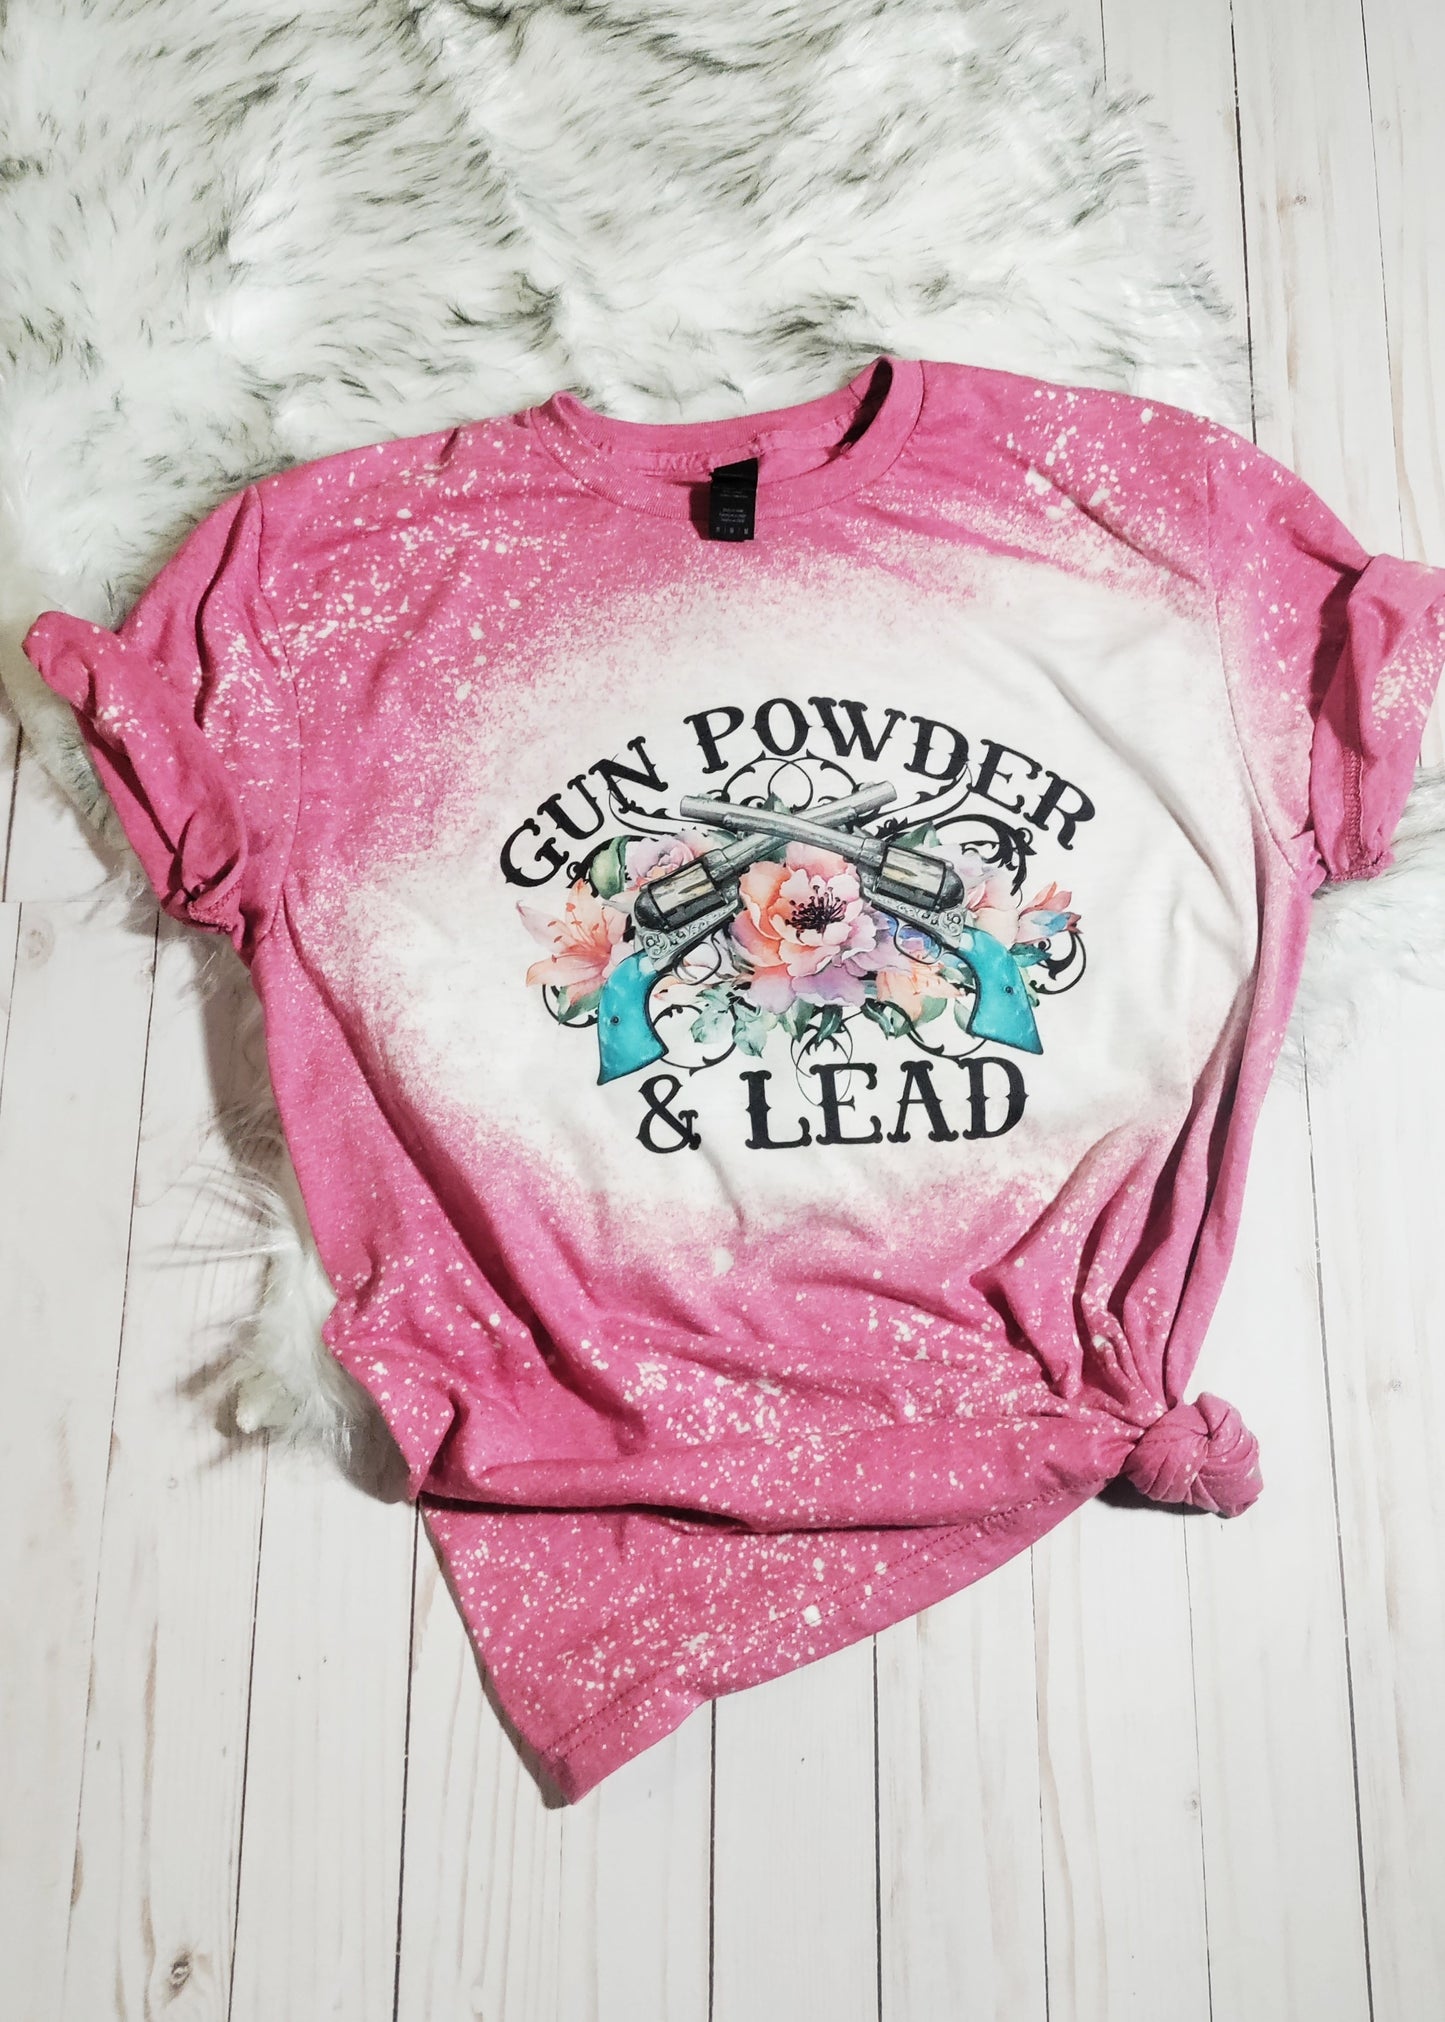 Gunpowder & Lead